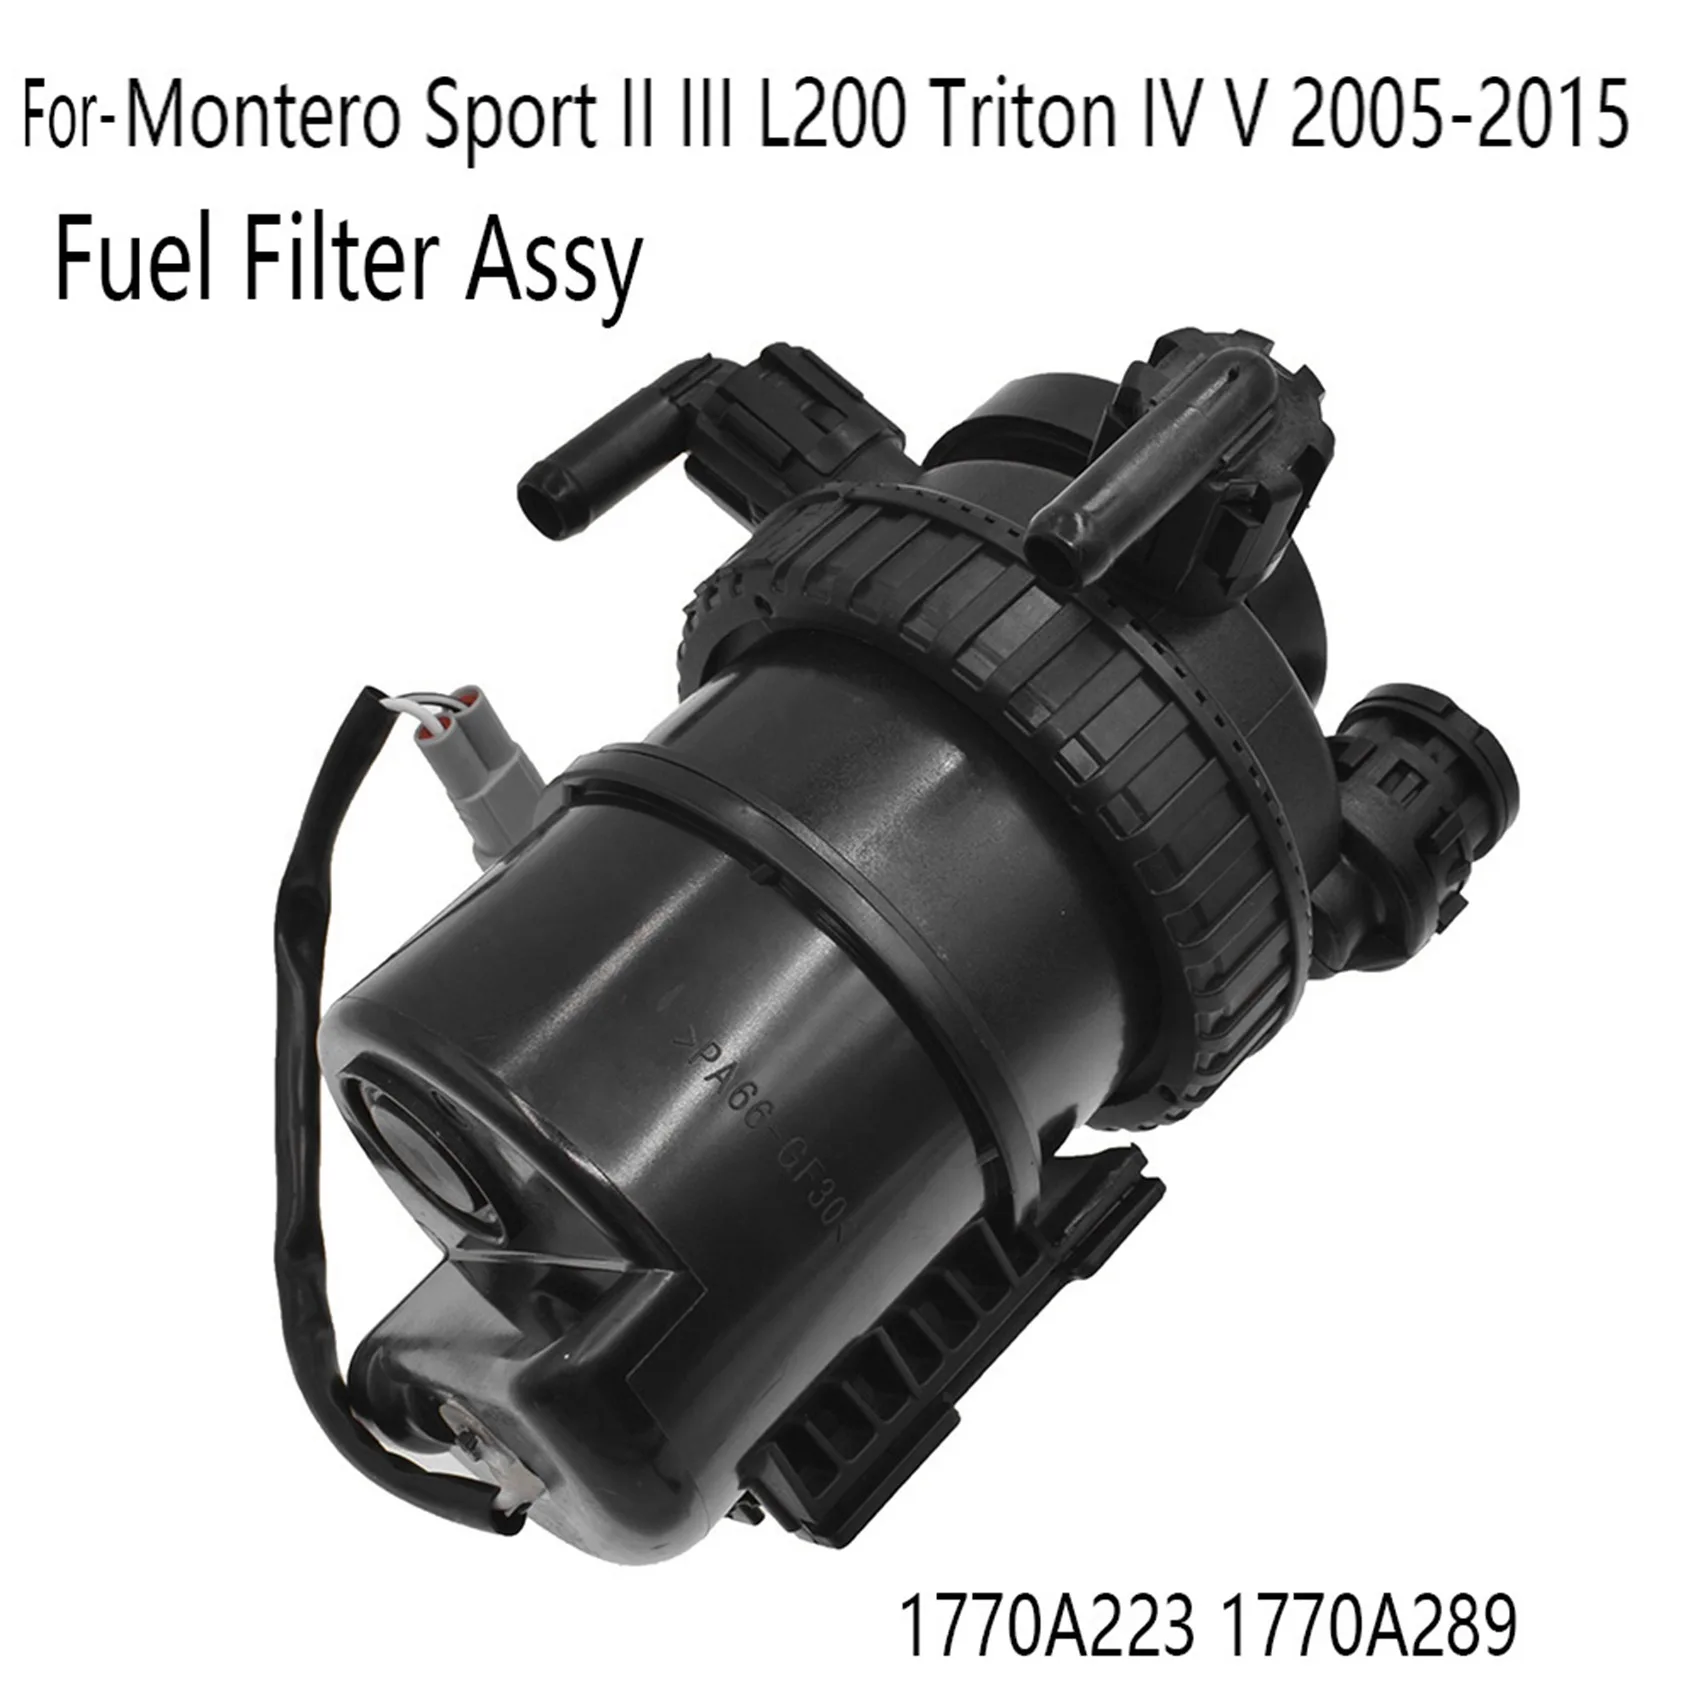 Топливный фильтр в сборе для Mitsubishi Pajero Montero Sport II III L200 Triton IV V 2005-2015 1770A223 1770A289